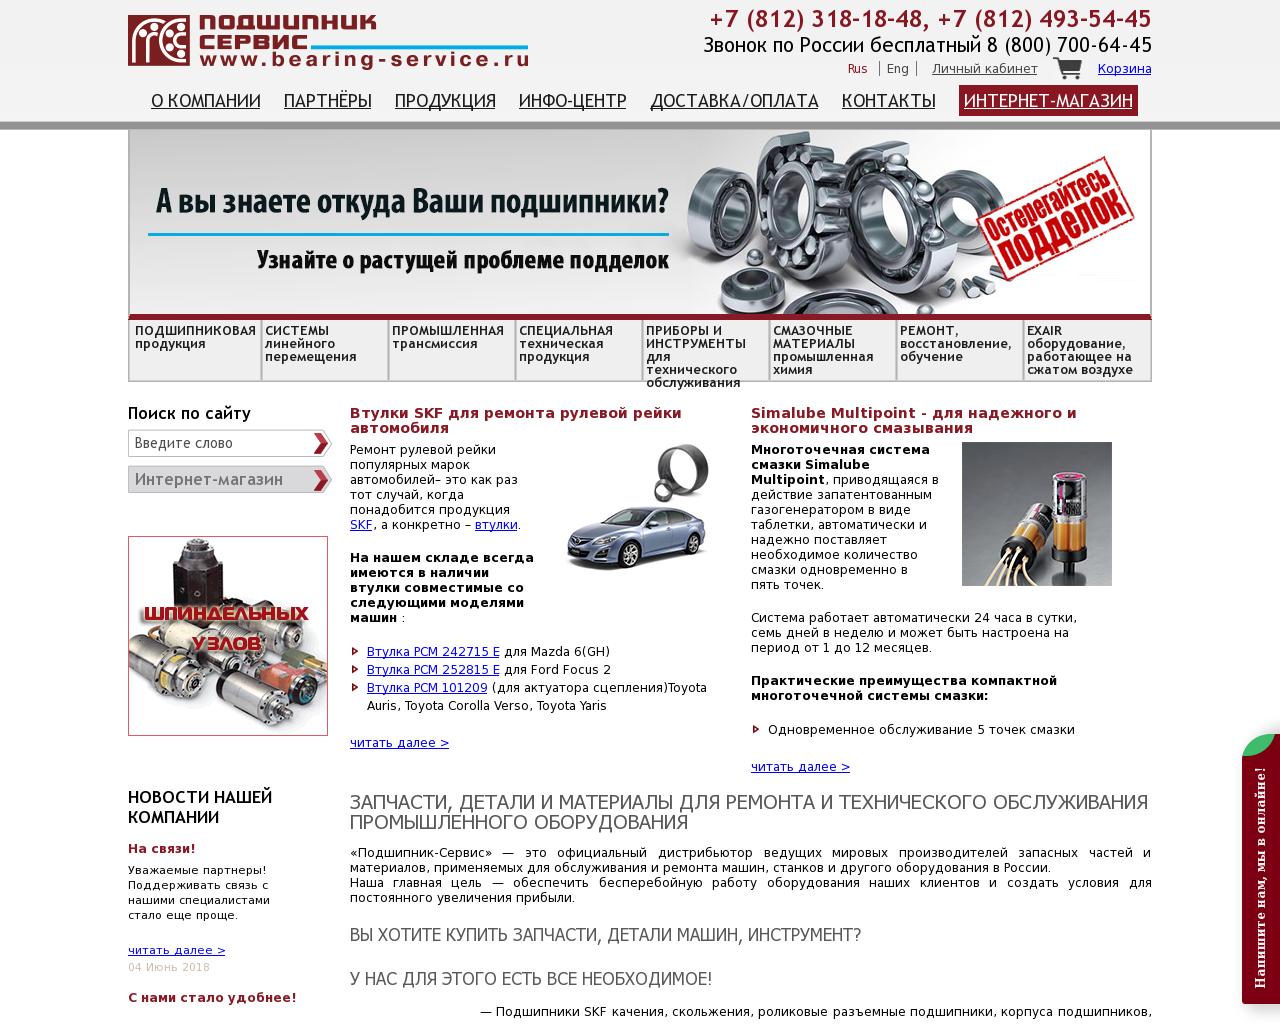 Изображение сайта bearing-service.ru в разрешении 1280x1024